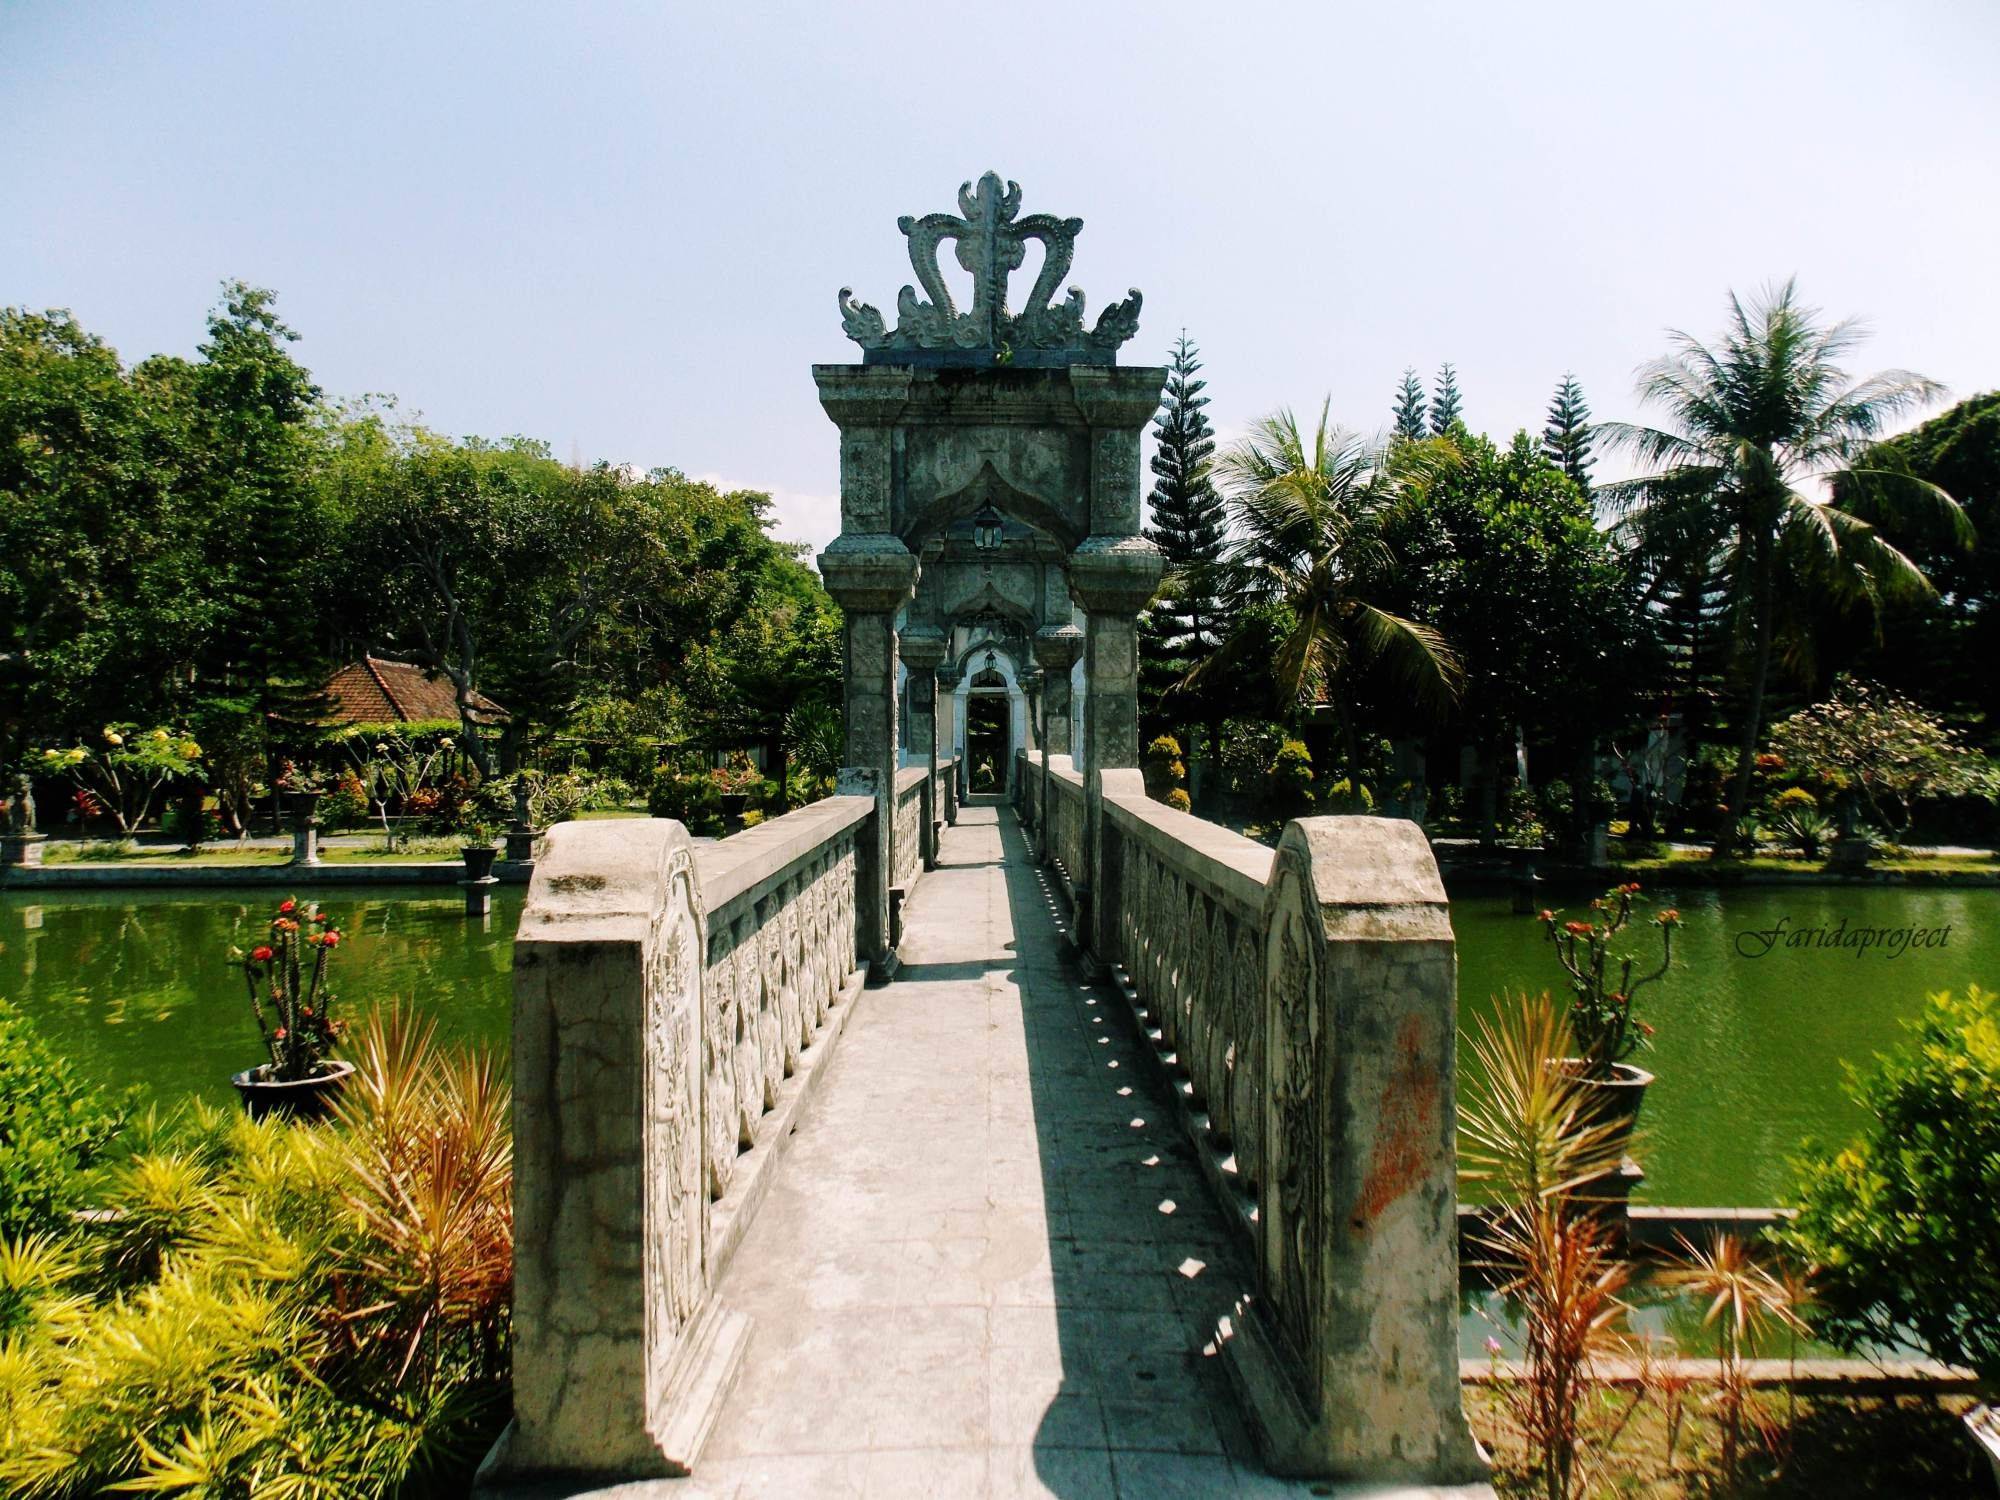 Водный дворец уджунг